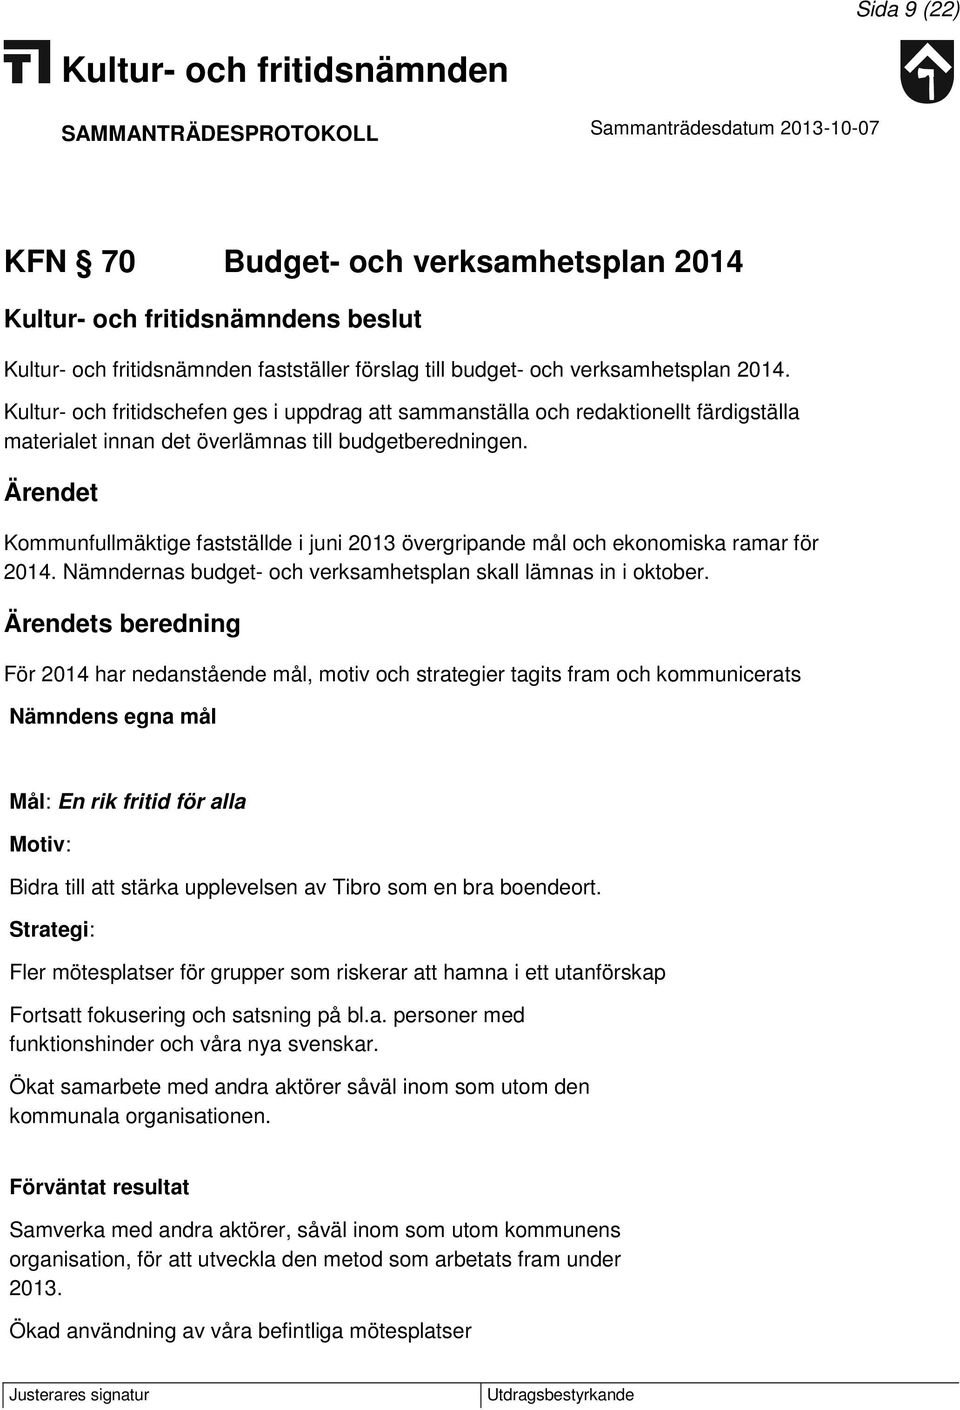 Kommunfullmäktige fastställde i juni 2013 övergripande mål och ekonomiska ramar för 2014. Nämndernas budget- och verksamhetsplan skall lämnas in i oktober.